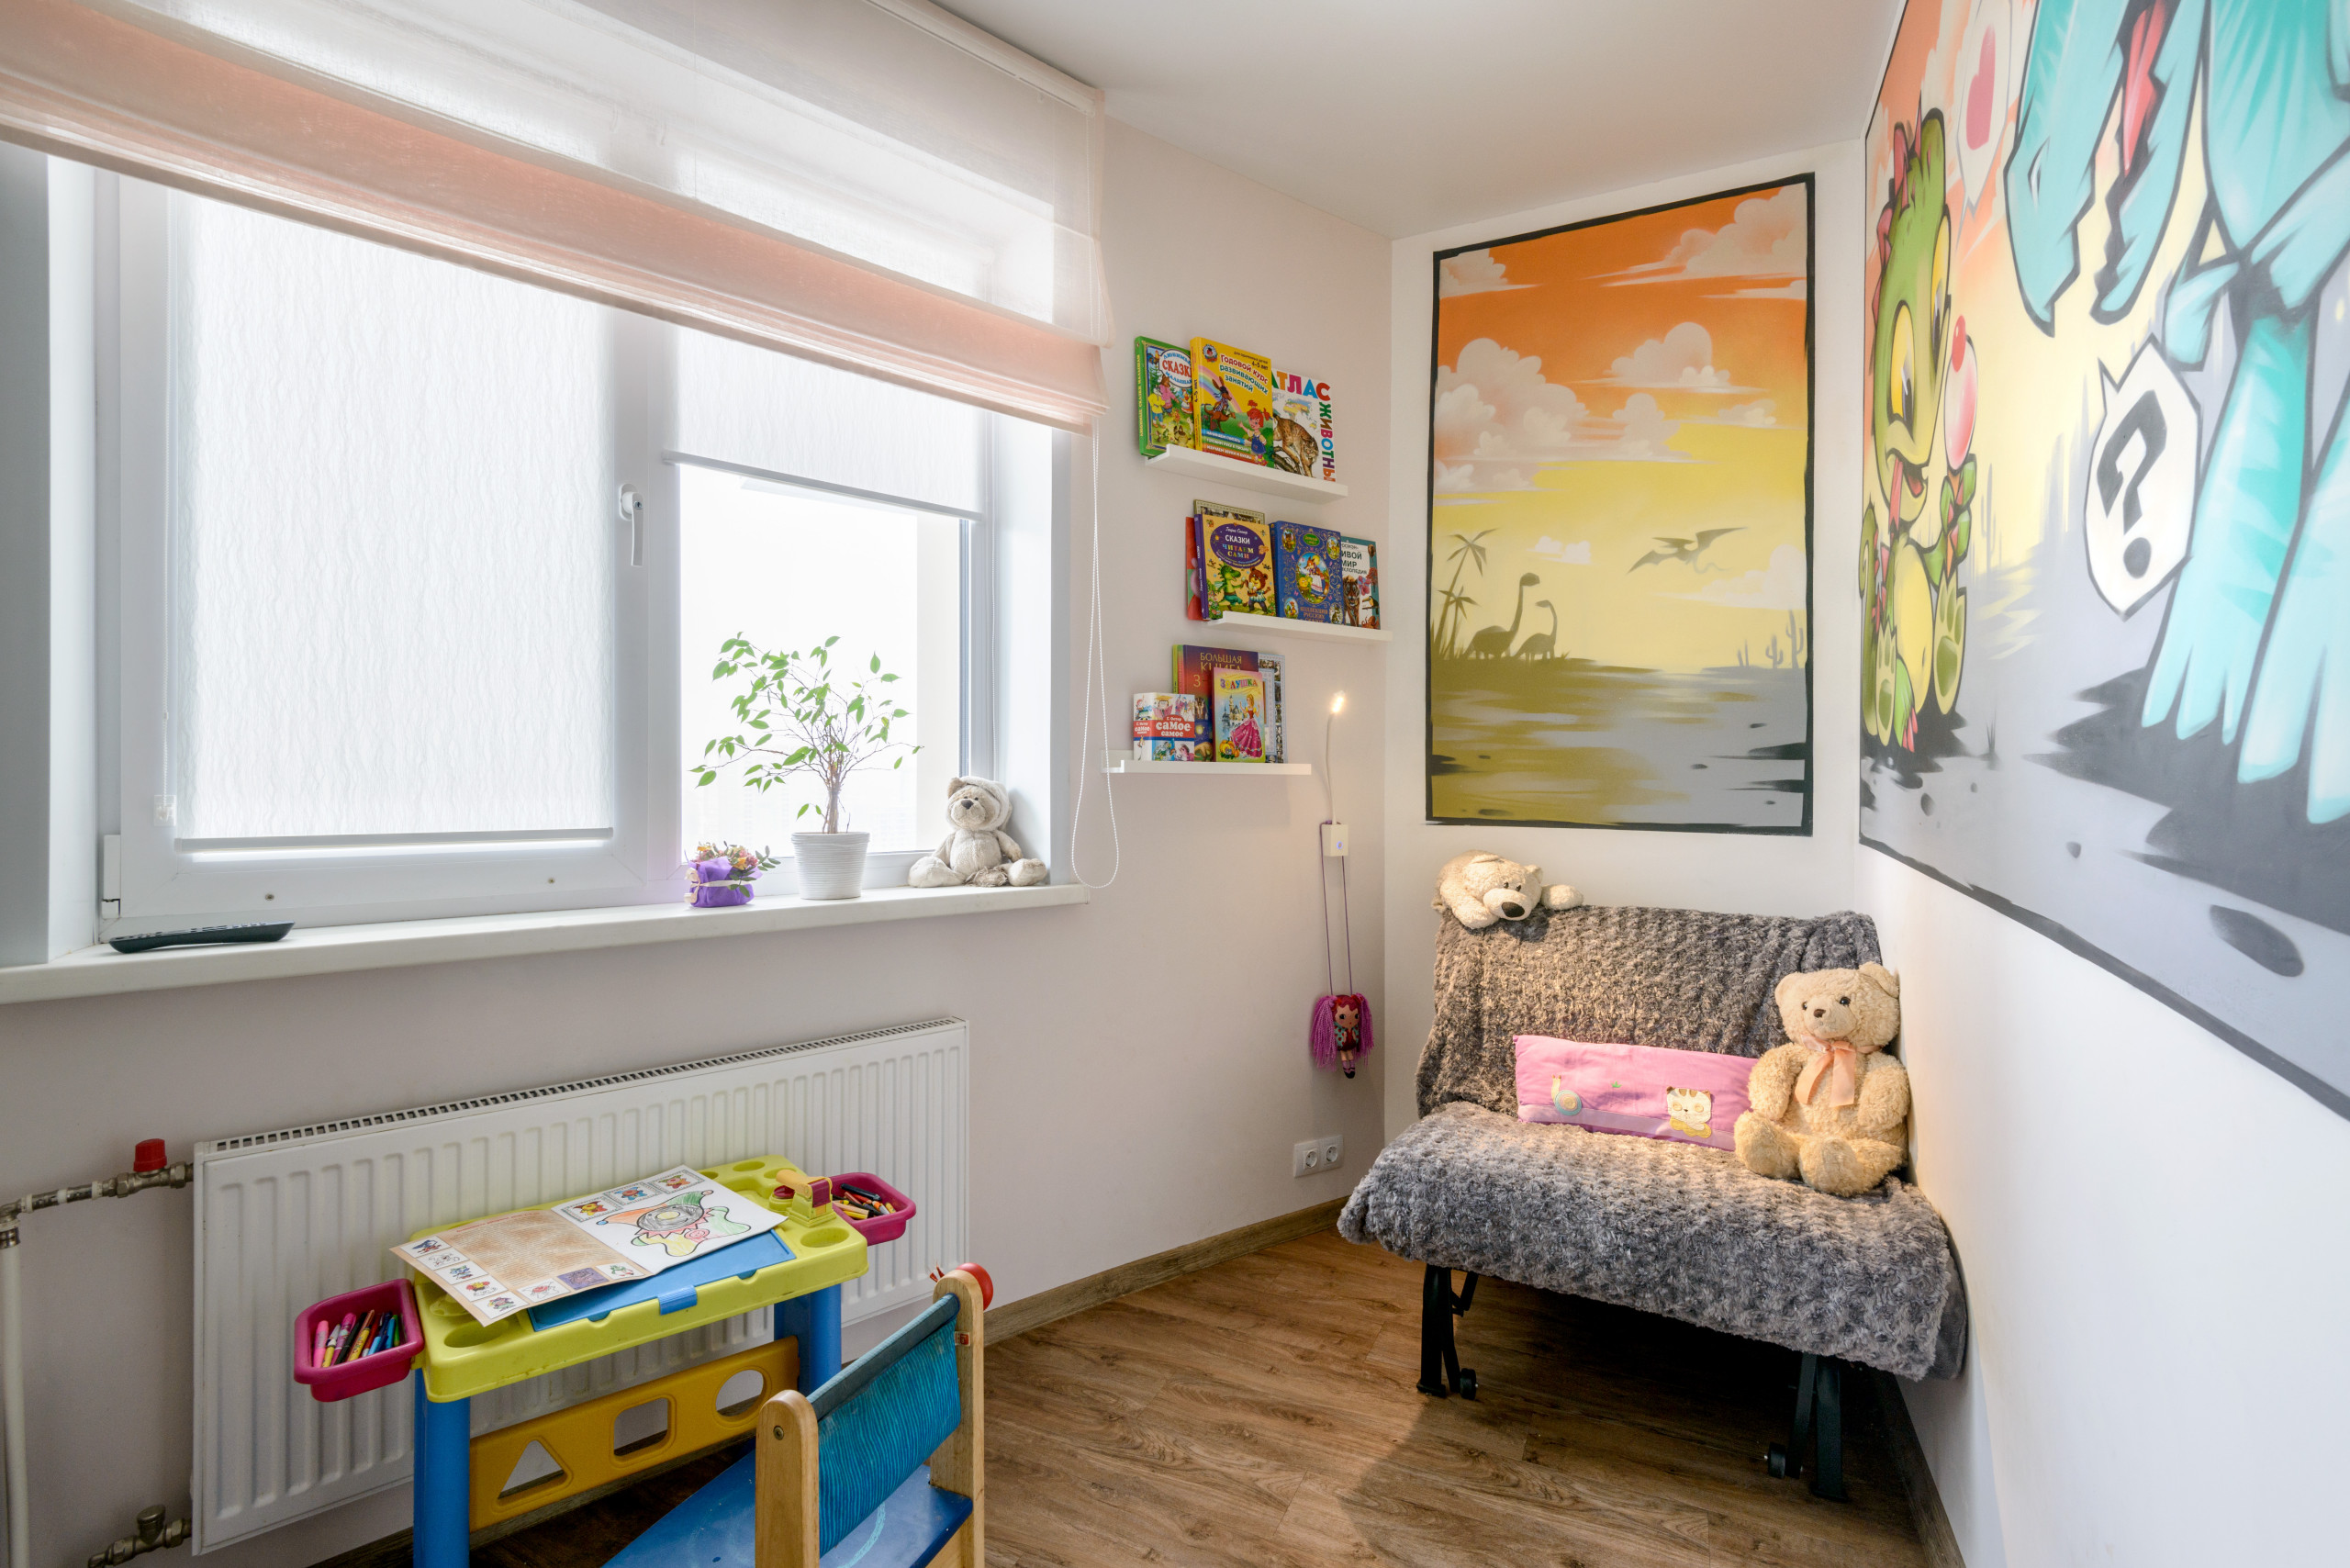 Однокомнатная квартира для семьи с ребенком: дизайн, зонирование,планировка – идеи и фото